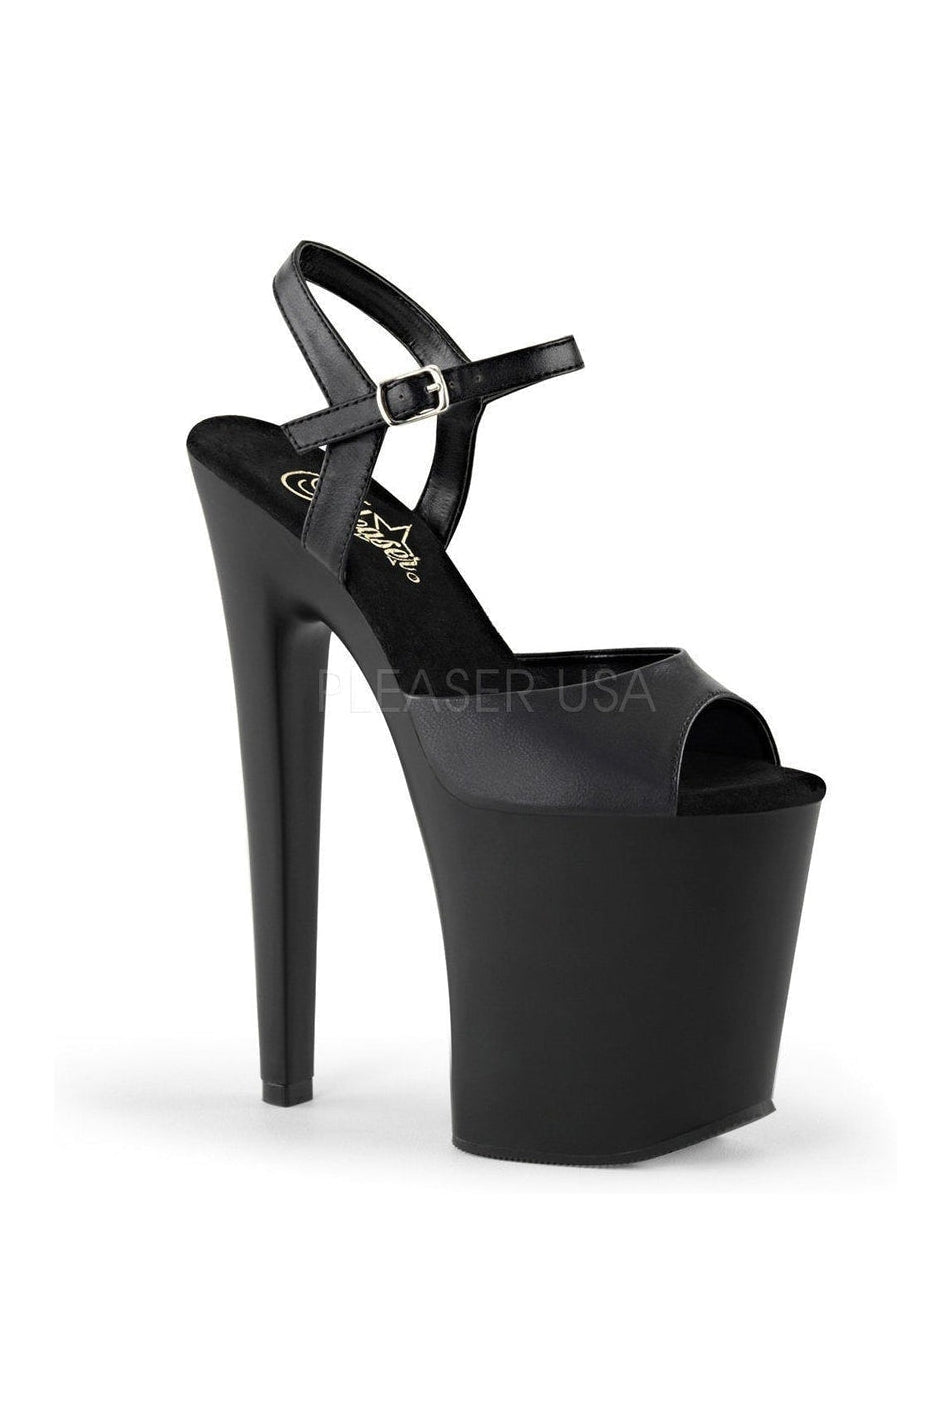 XTREME-809 Platform Sandal | Black Faux Leather-Pleaser-Black-Sandals-SEXYSHOES.COM